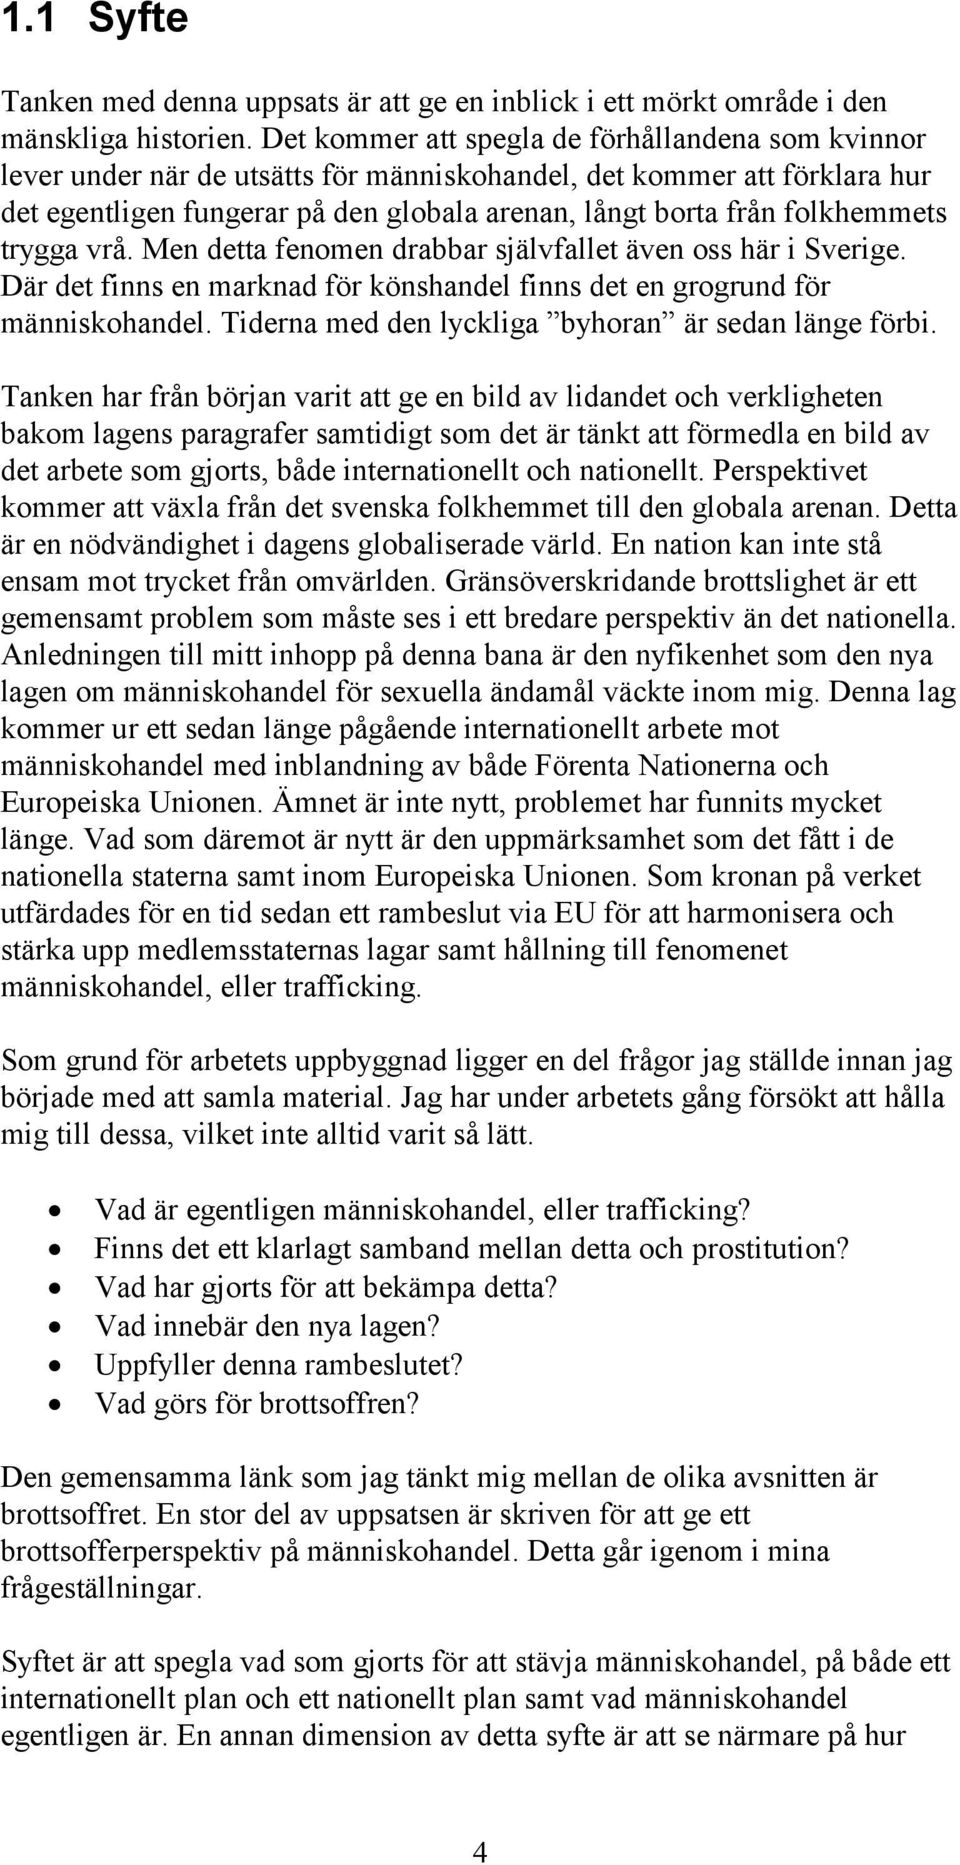 folkhemmets trygga vrå. Men detta fenomen drabbar självfallet även oss här i Sverige. Där det finns en marknad för könshandel finns det en grogrund för människohandel.